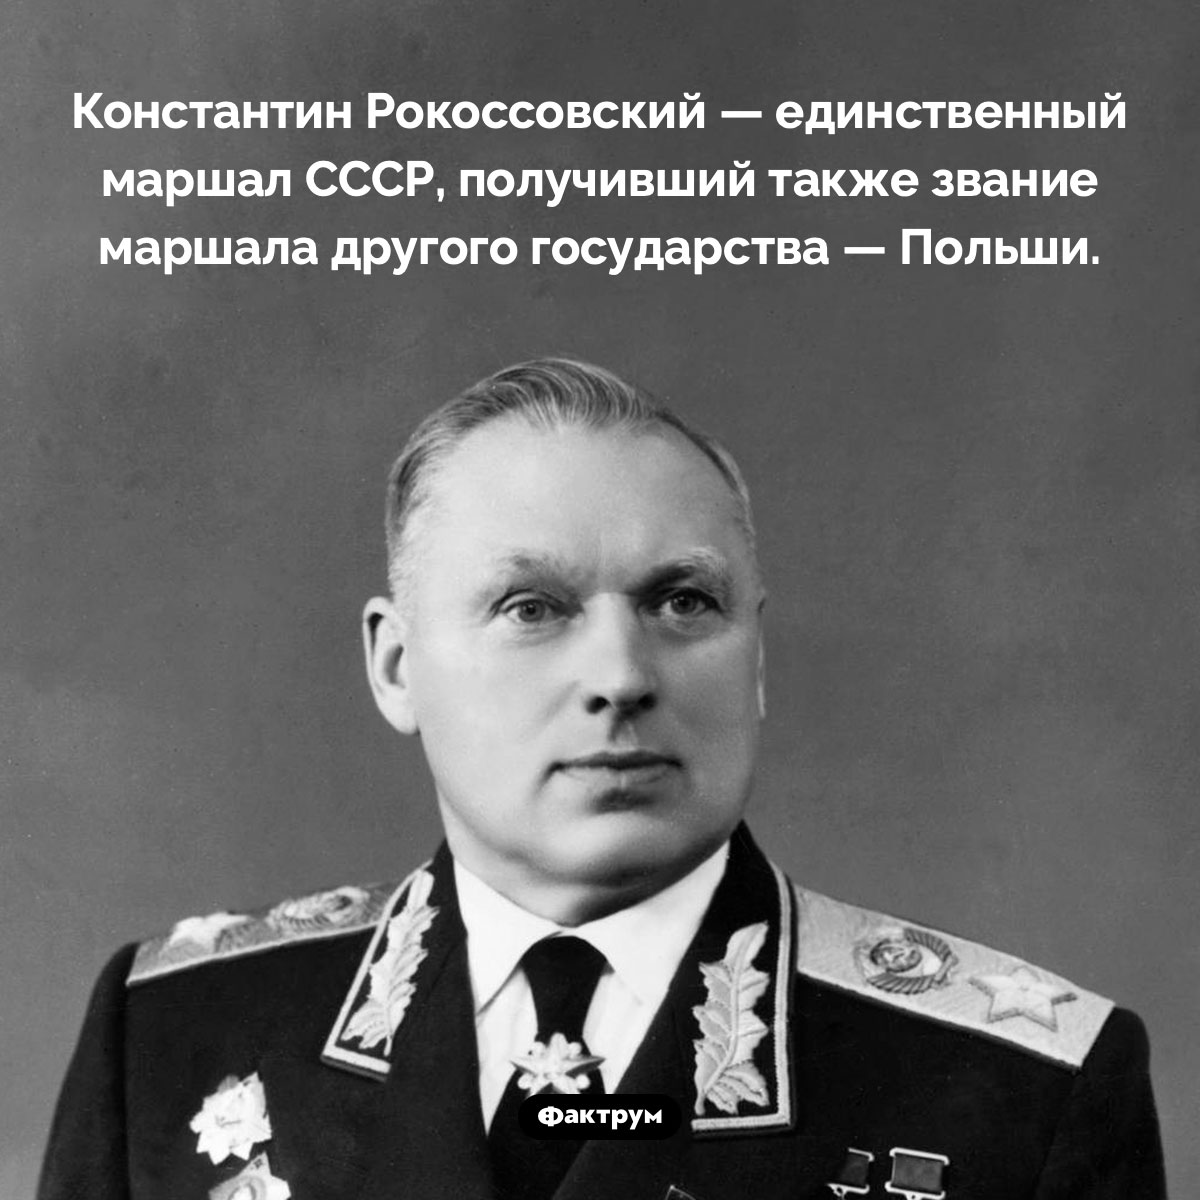 Константин Рокоссовский был маршалом двух государств. Константин Рокоссовский — единственный маршал СССР, получивший также звание маршала другого государства — Польши.